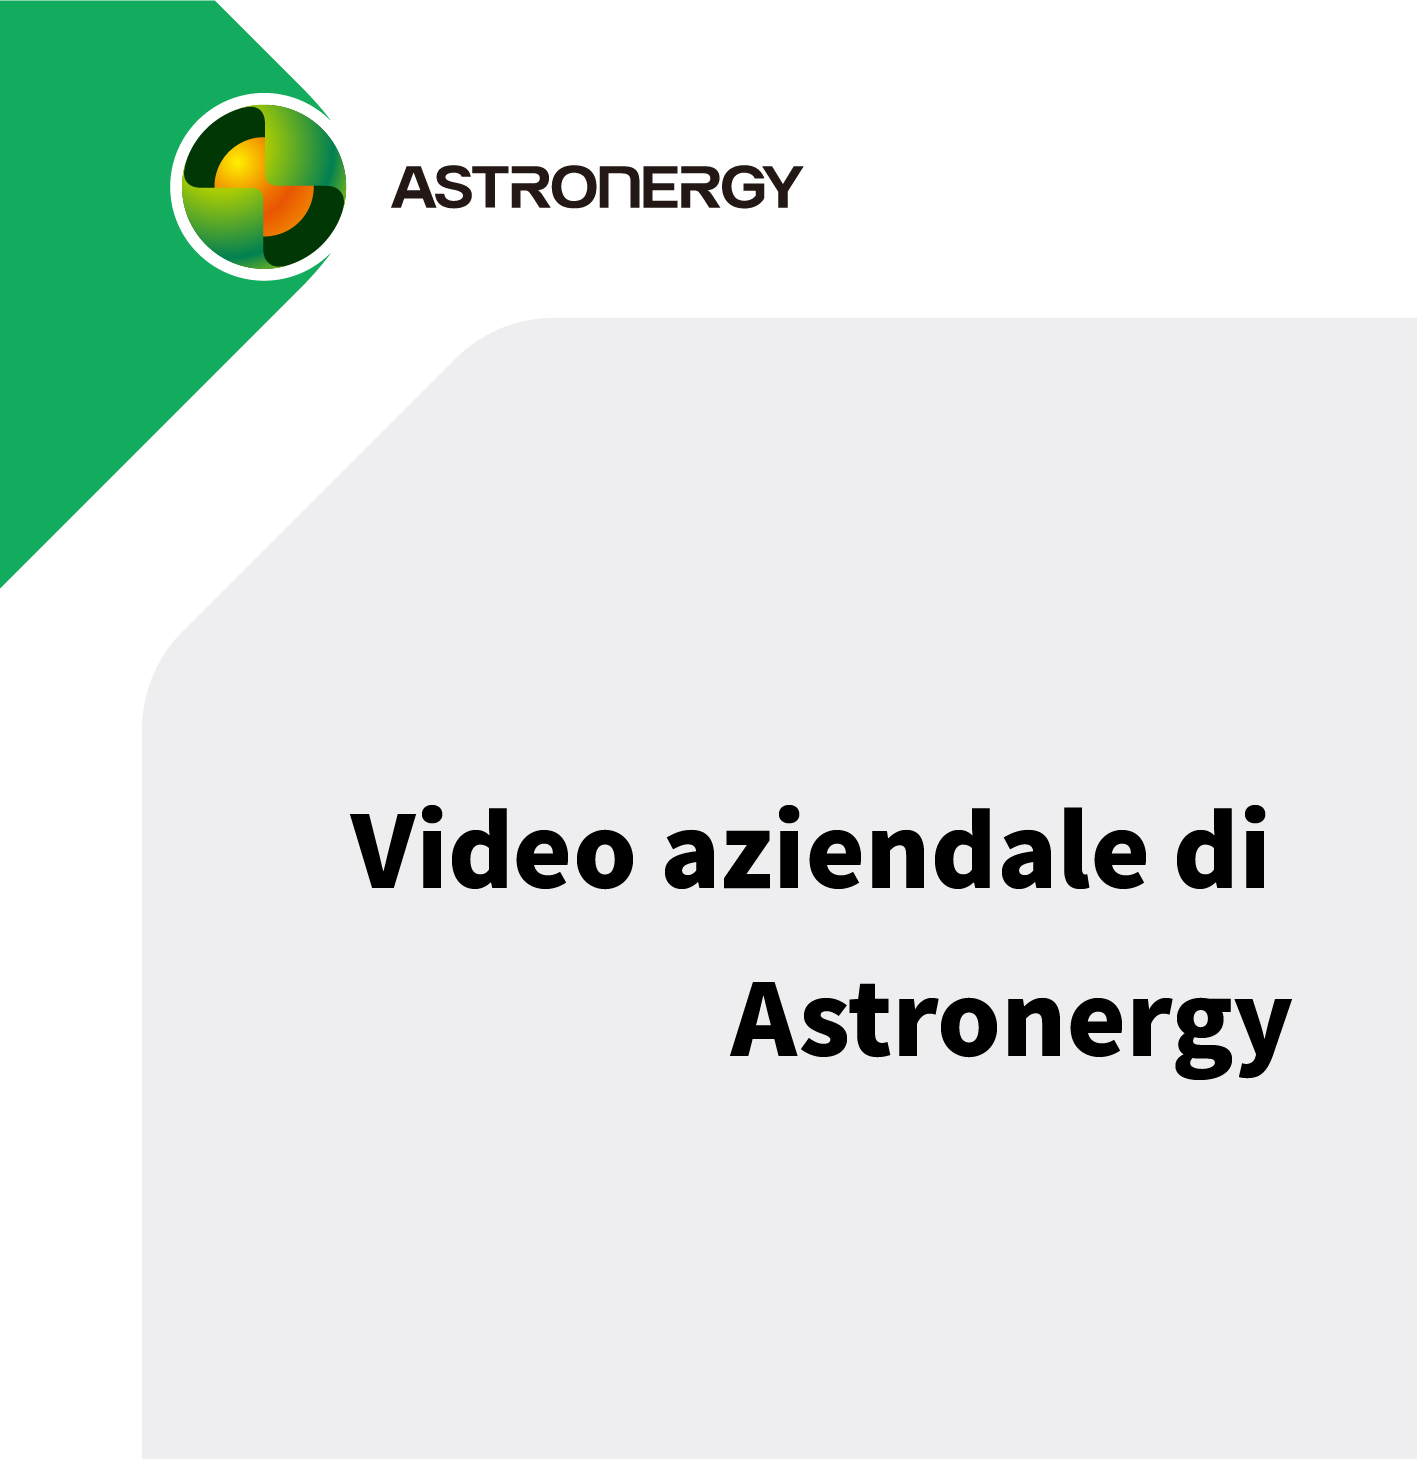 Video aziendale di Astronergy